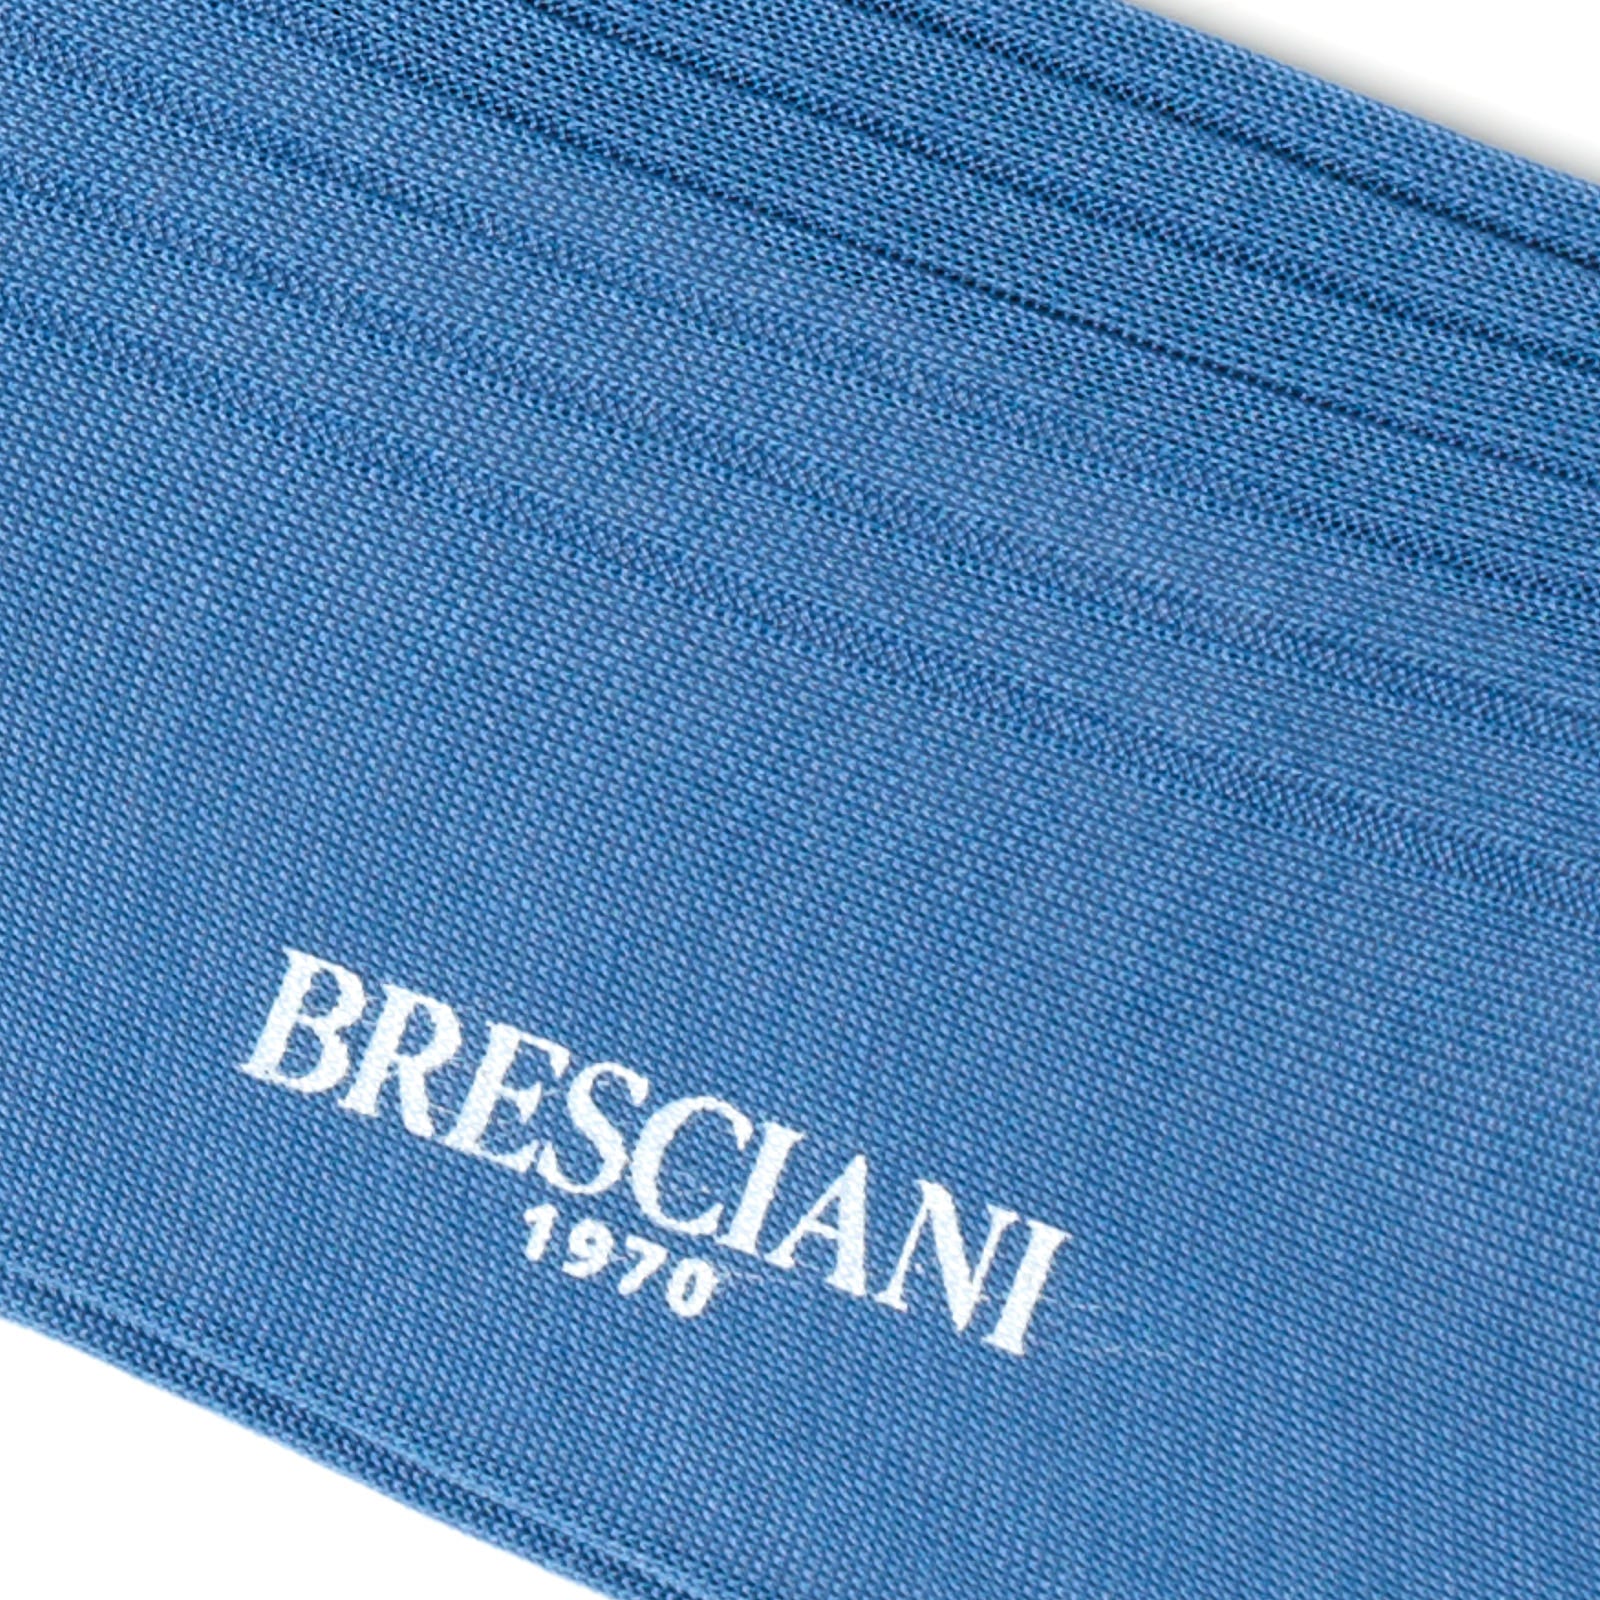 BRESCIANI Cotton Mid Calf Length Socks US M-L BRESCIANI